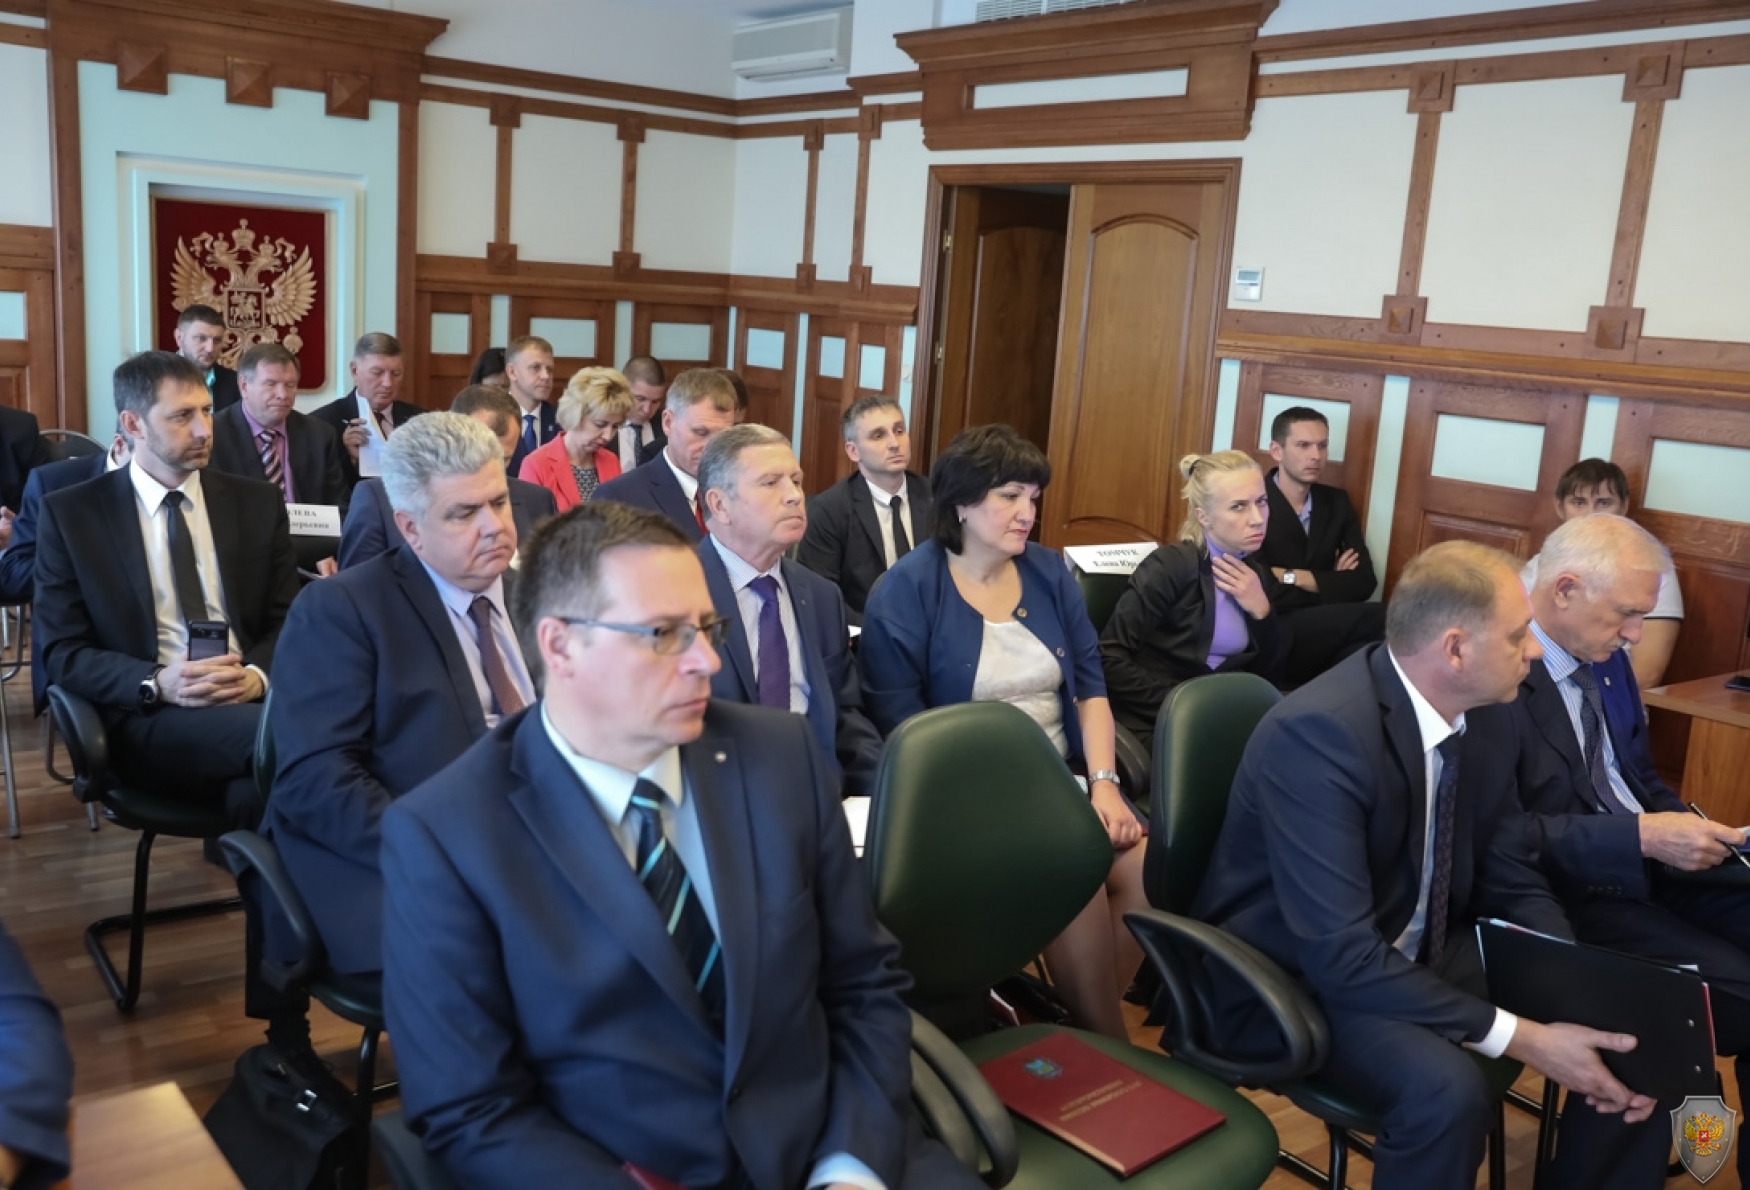 Фото заседания АТК, на фото изображены члены антитеррористической комиссии Приморского края, приглашенные лица и докладчики.